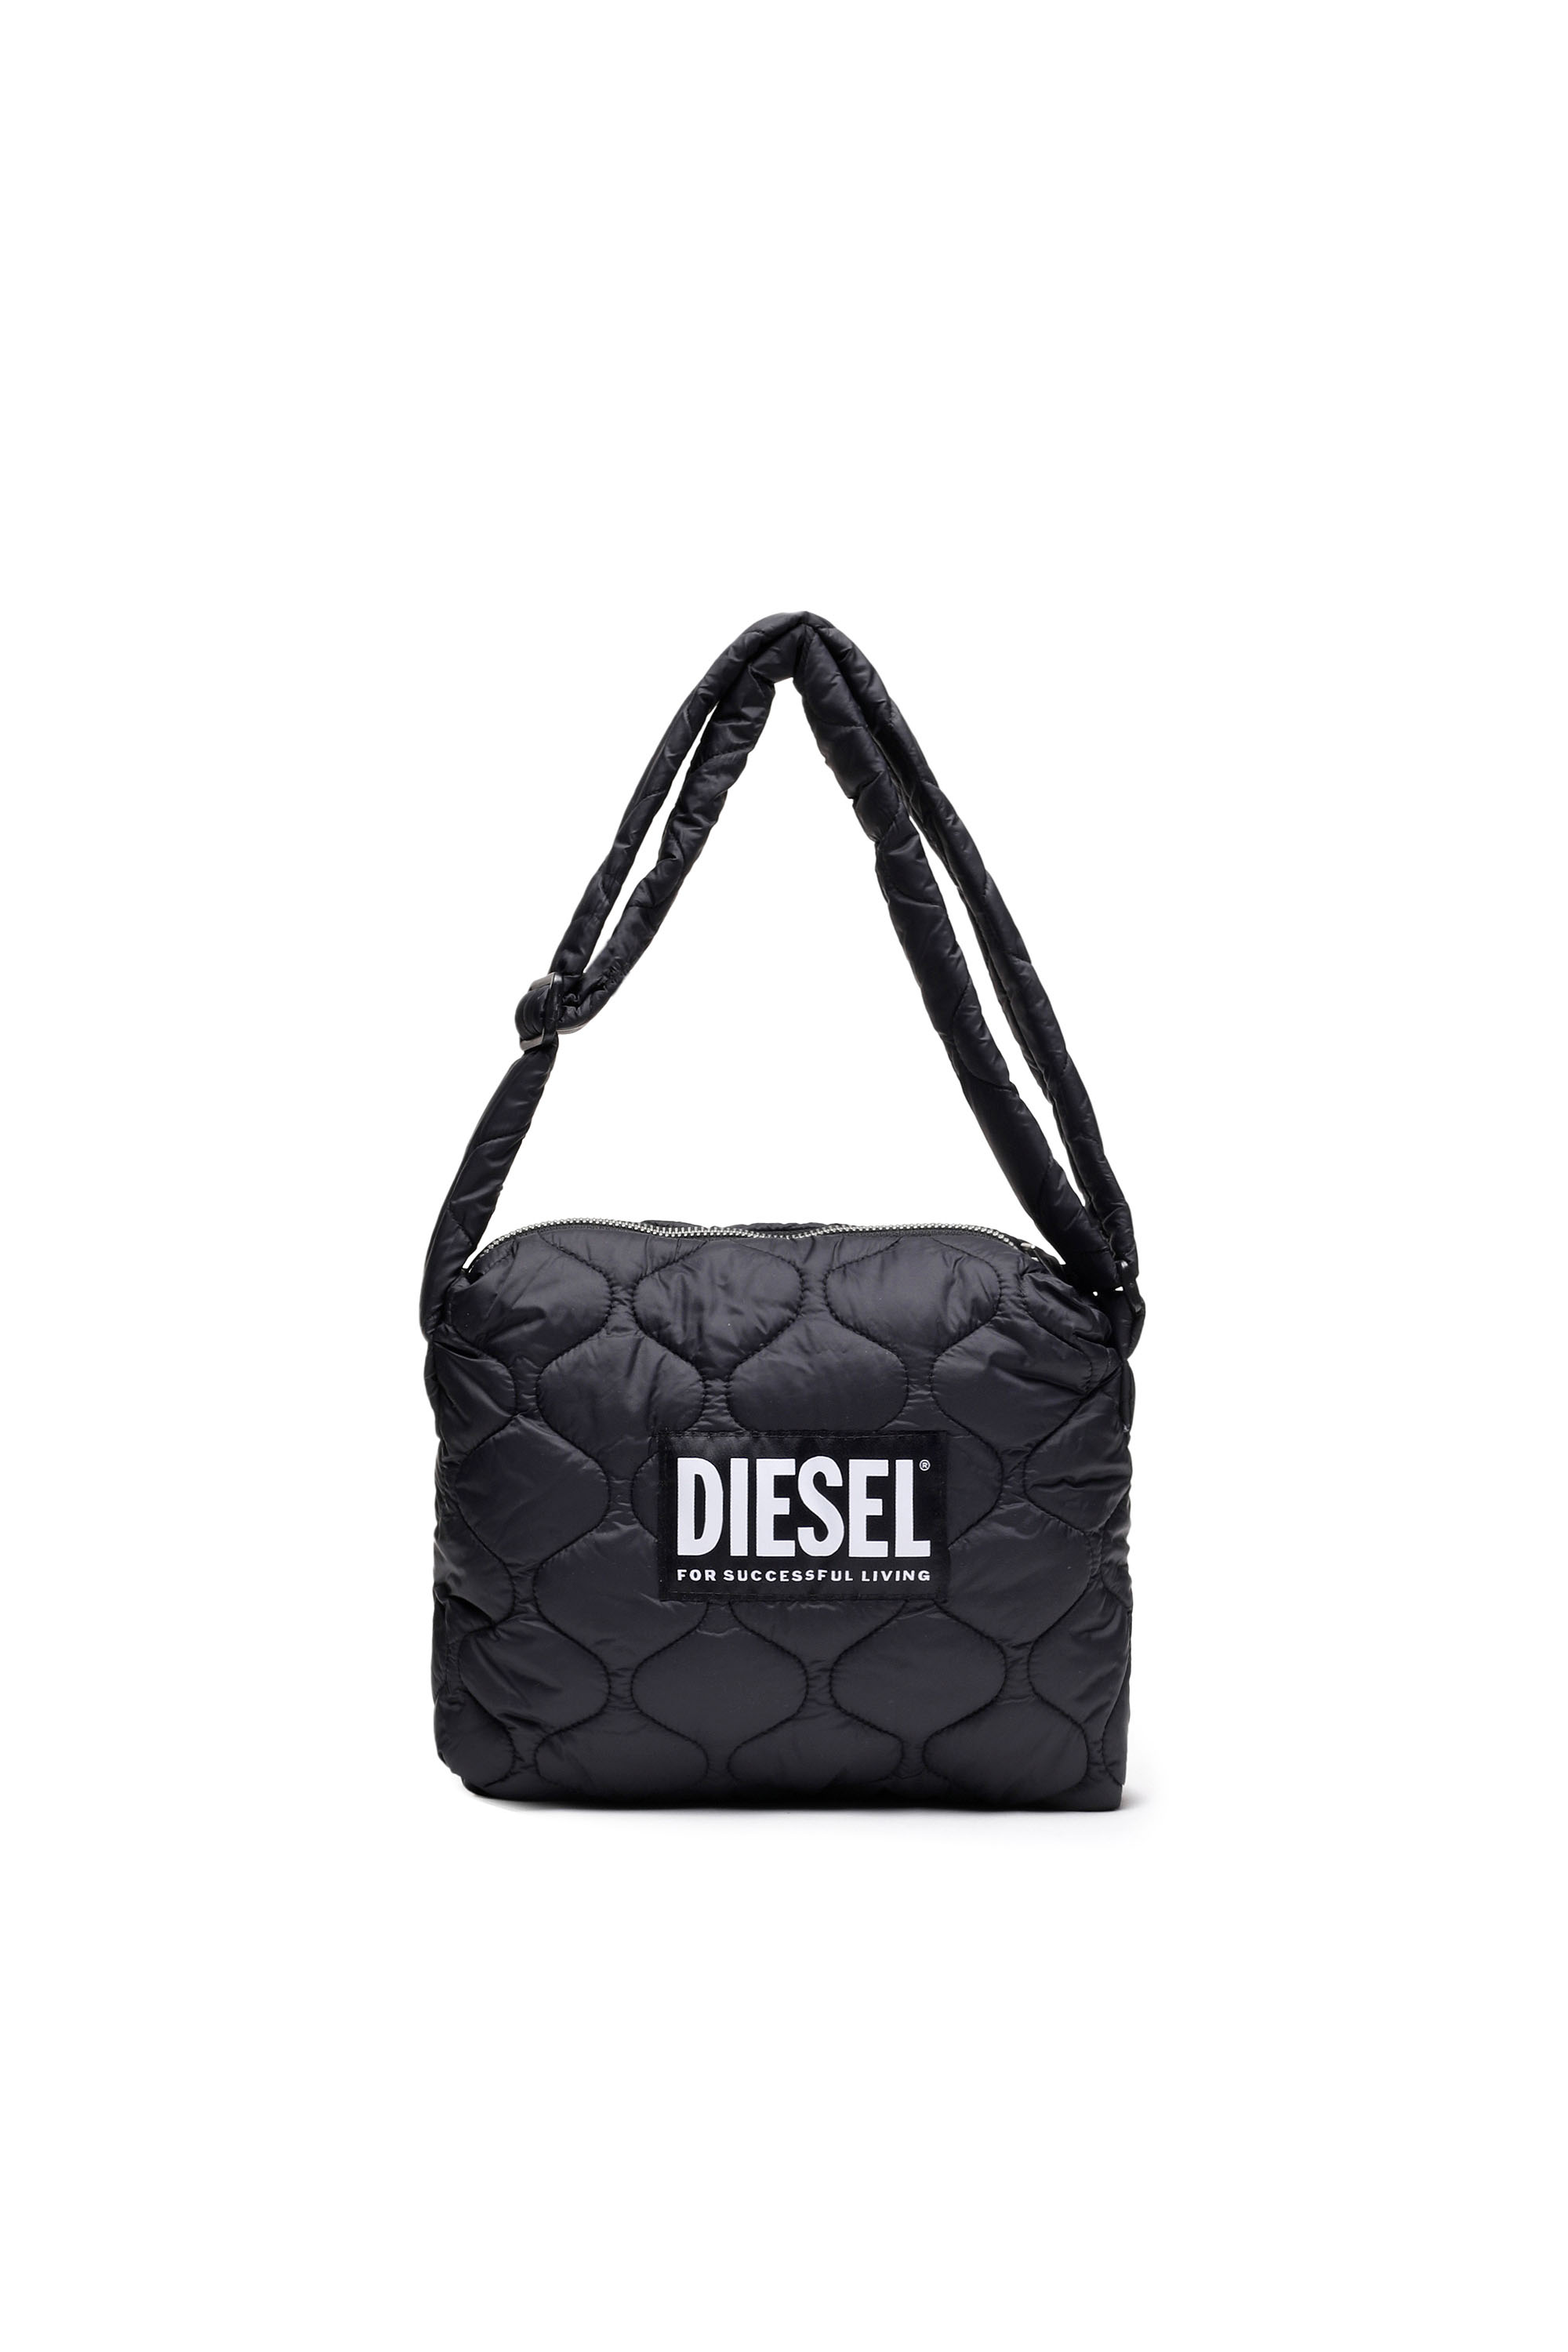 Diesel - WACLE, Black - Image 1